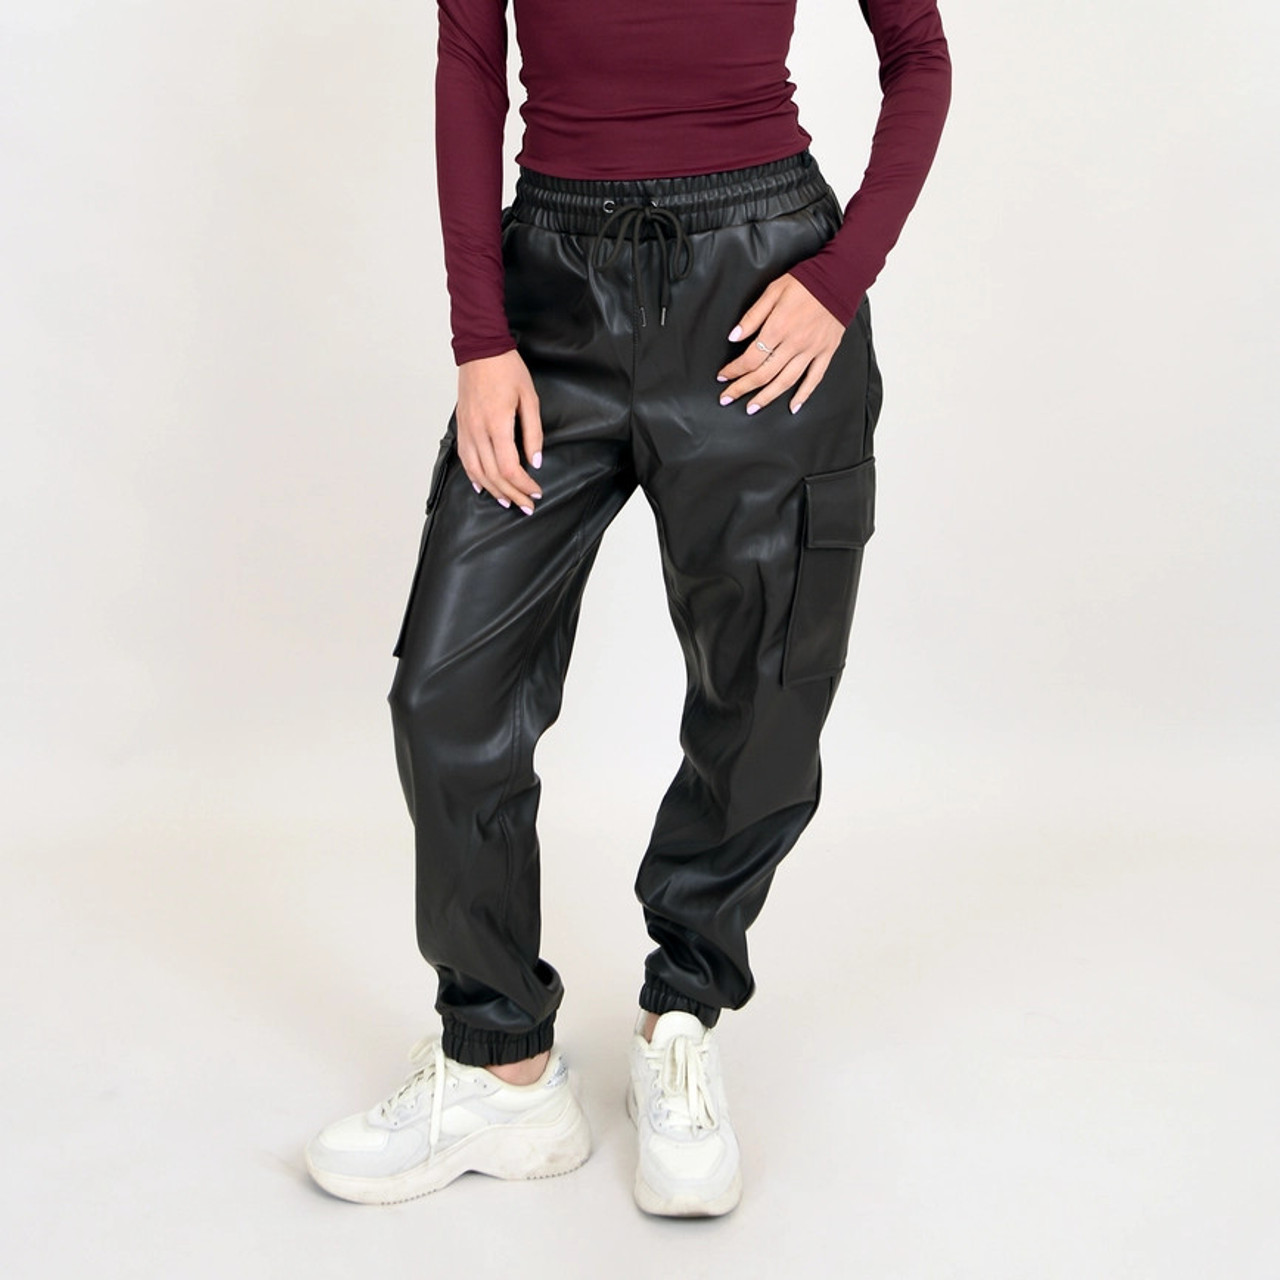 Blair Vegan Leather Pant